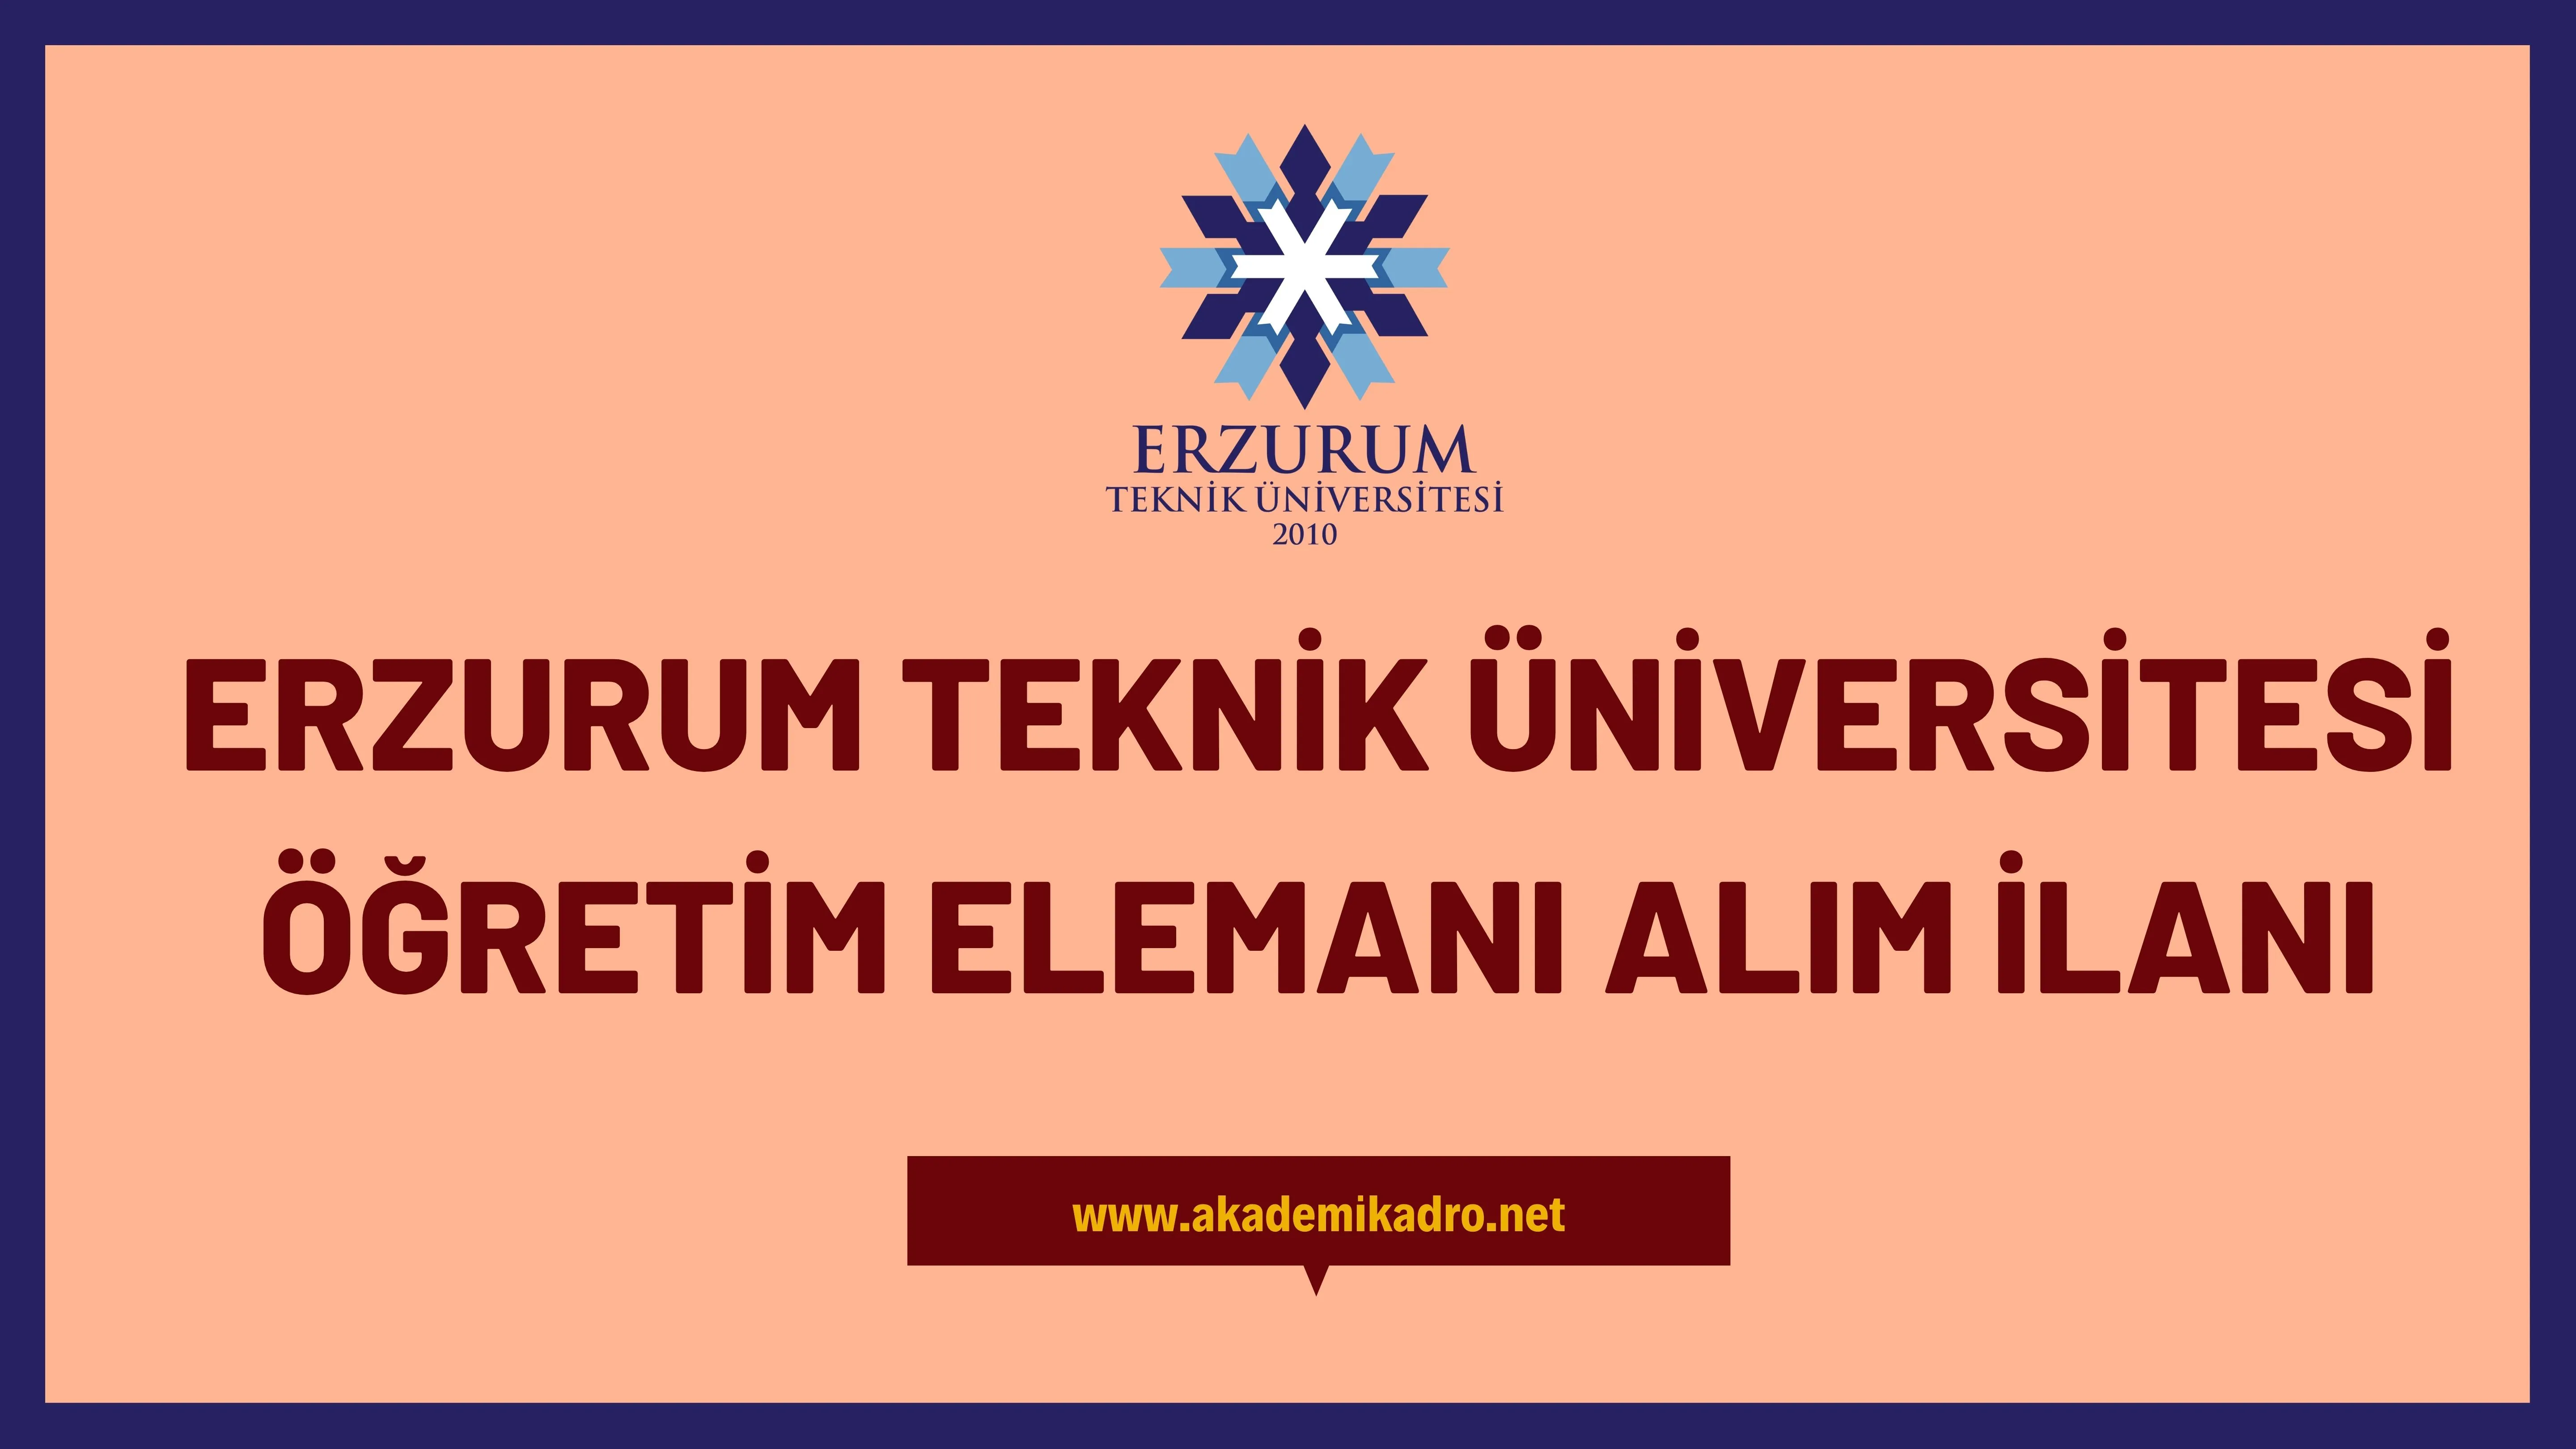 Erzurum Teknik Üniversitesi 2 Araştırma görevlisi, 3 Öğretim görevlisi ve birçok alandan 25 Öğretim üyesi olmak üzere 30 Öğretim elemanı alacak.